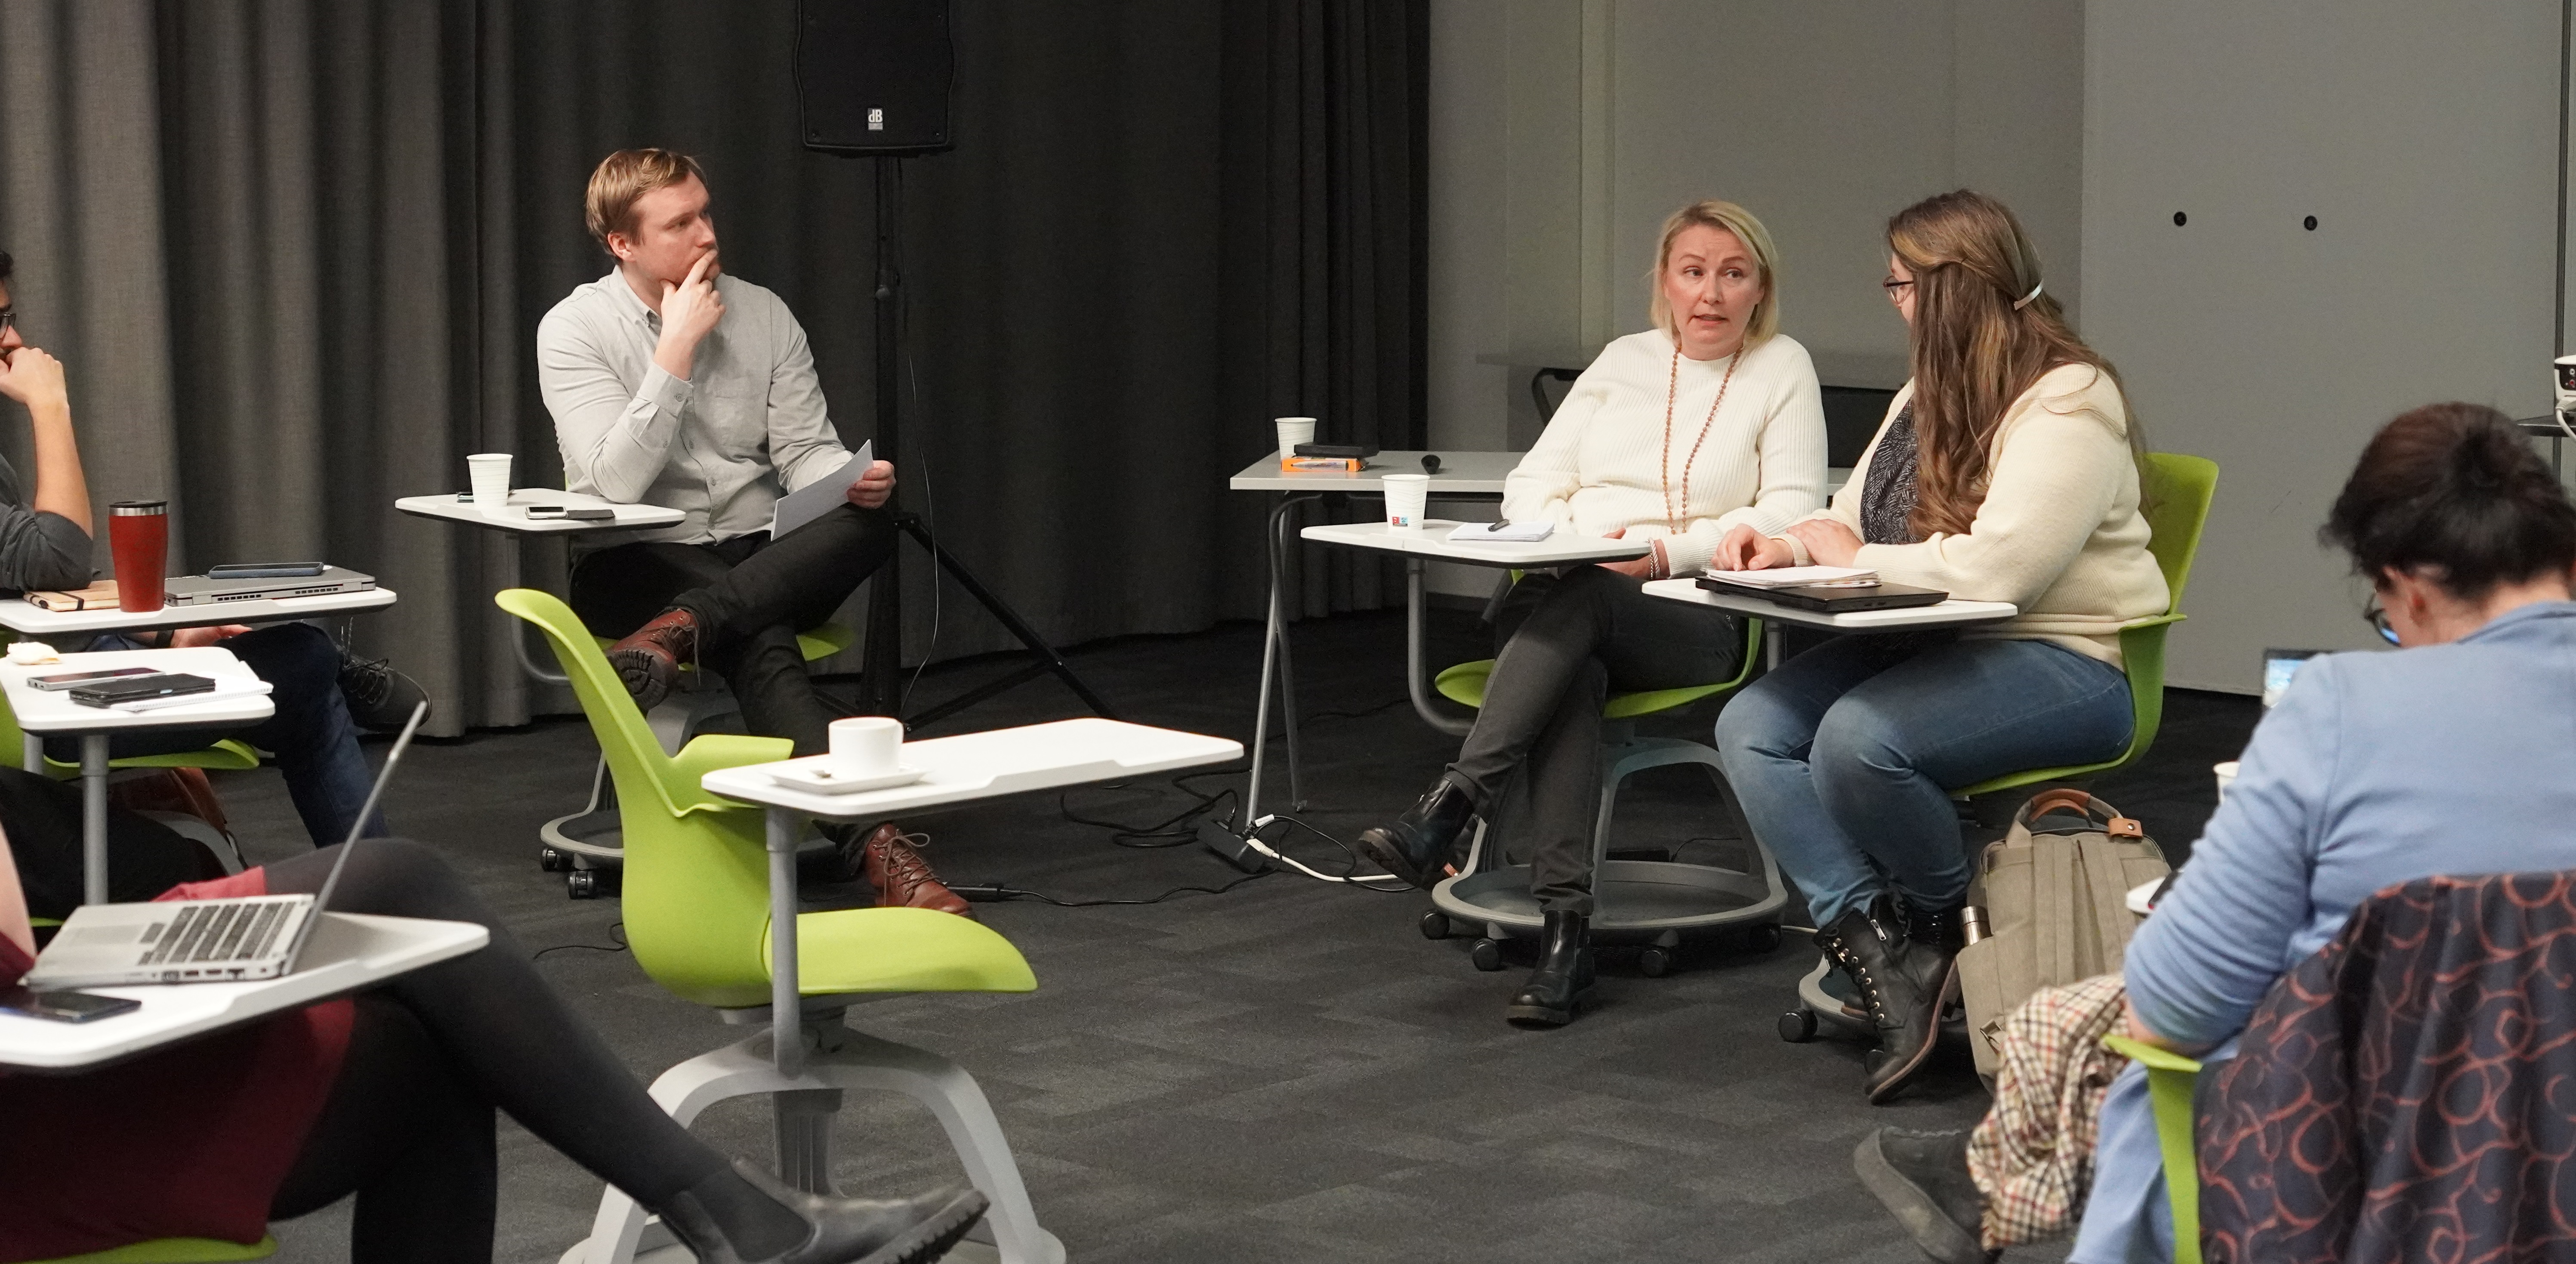 Panel discussion participants Marko Kelahaara, Susanna Lahtinen and Oili Kallatsa